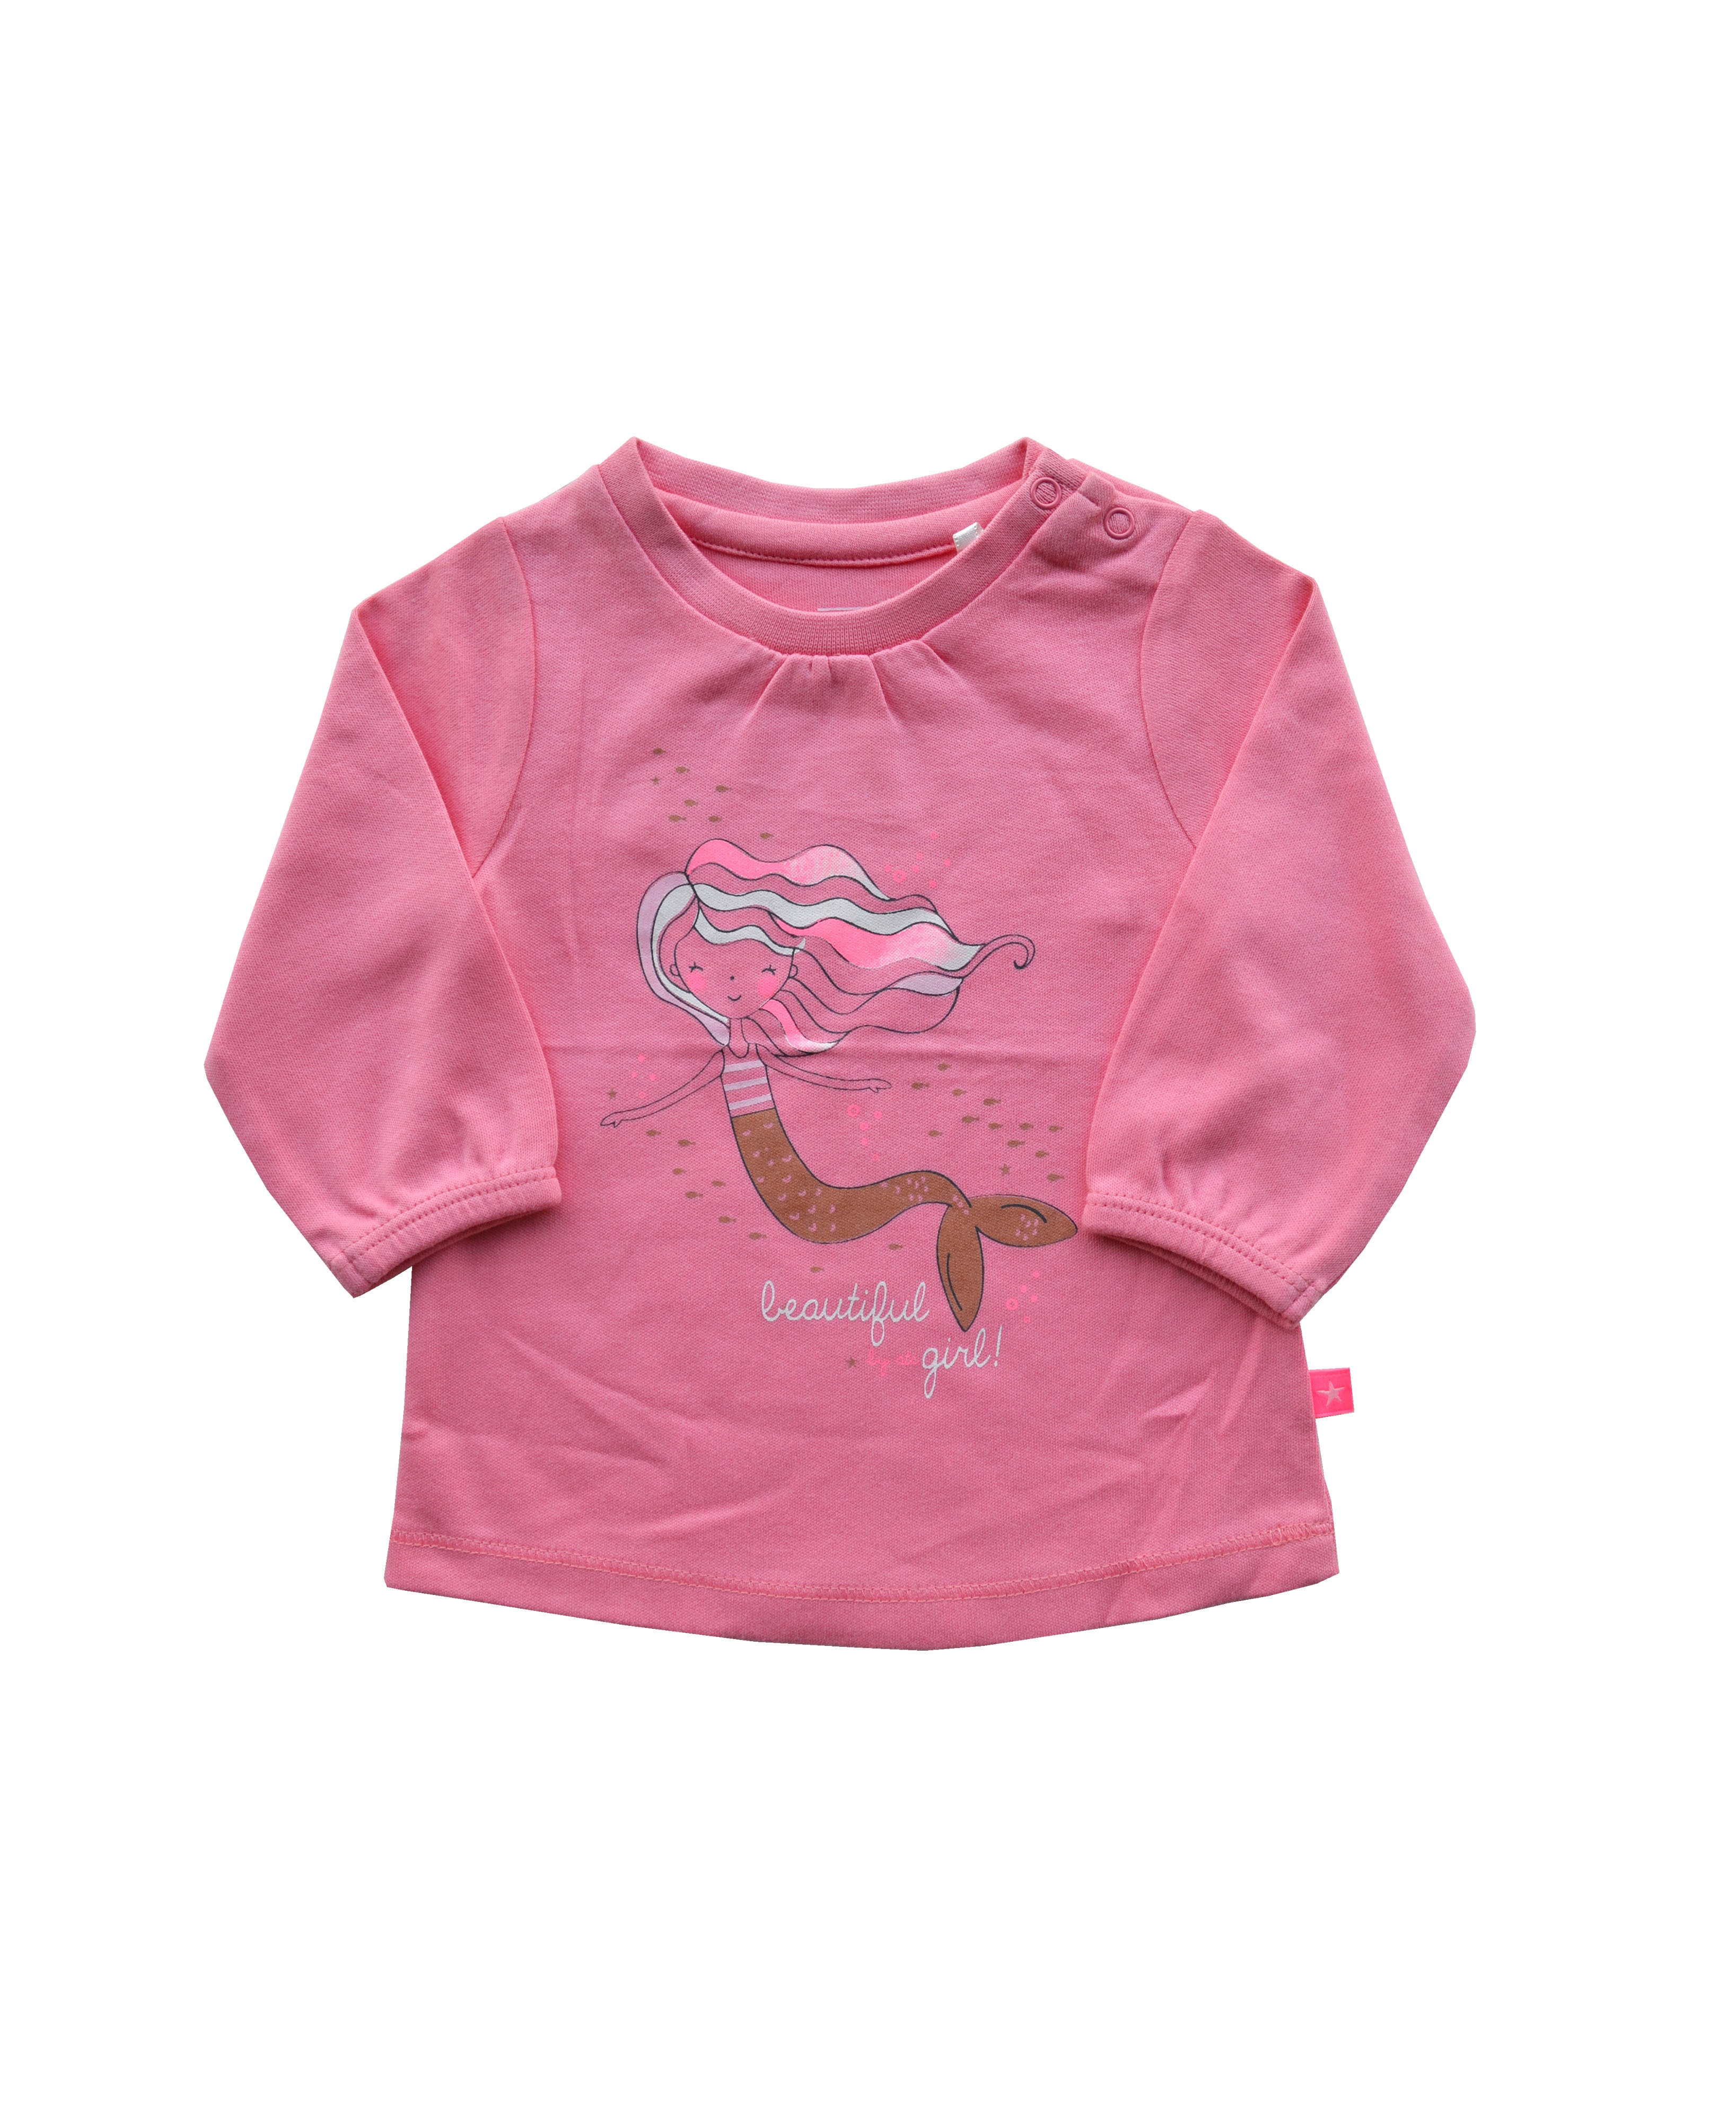 Babeez | Pink Girls T-Shirt with Mermaid print (100% Cotton Interlock Biowash) undefined